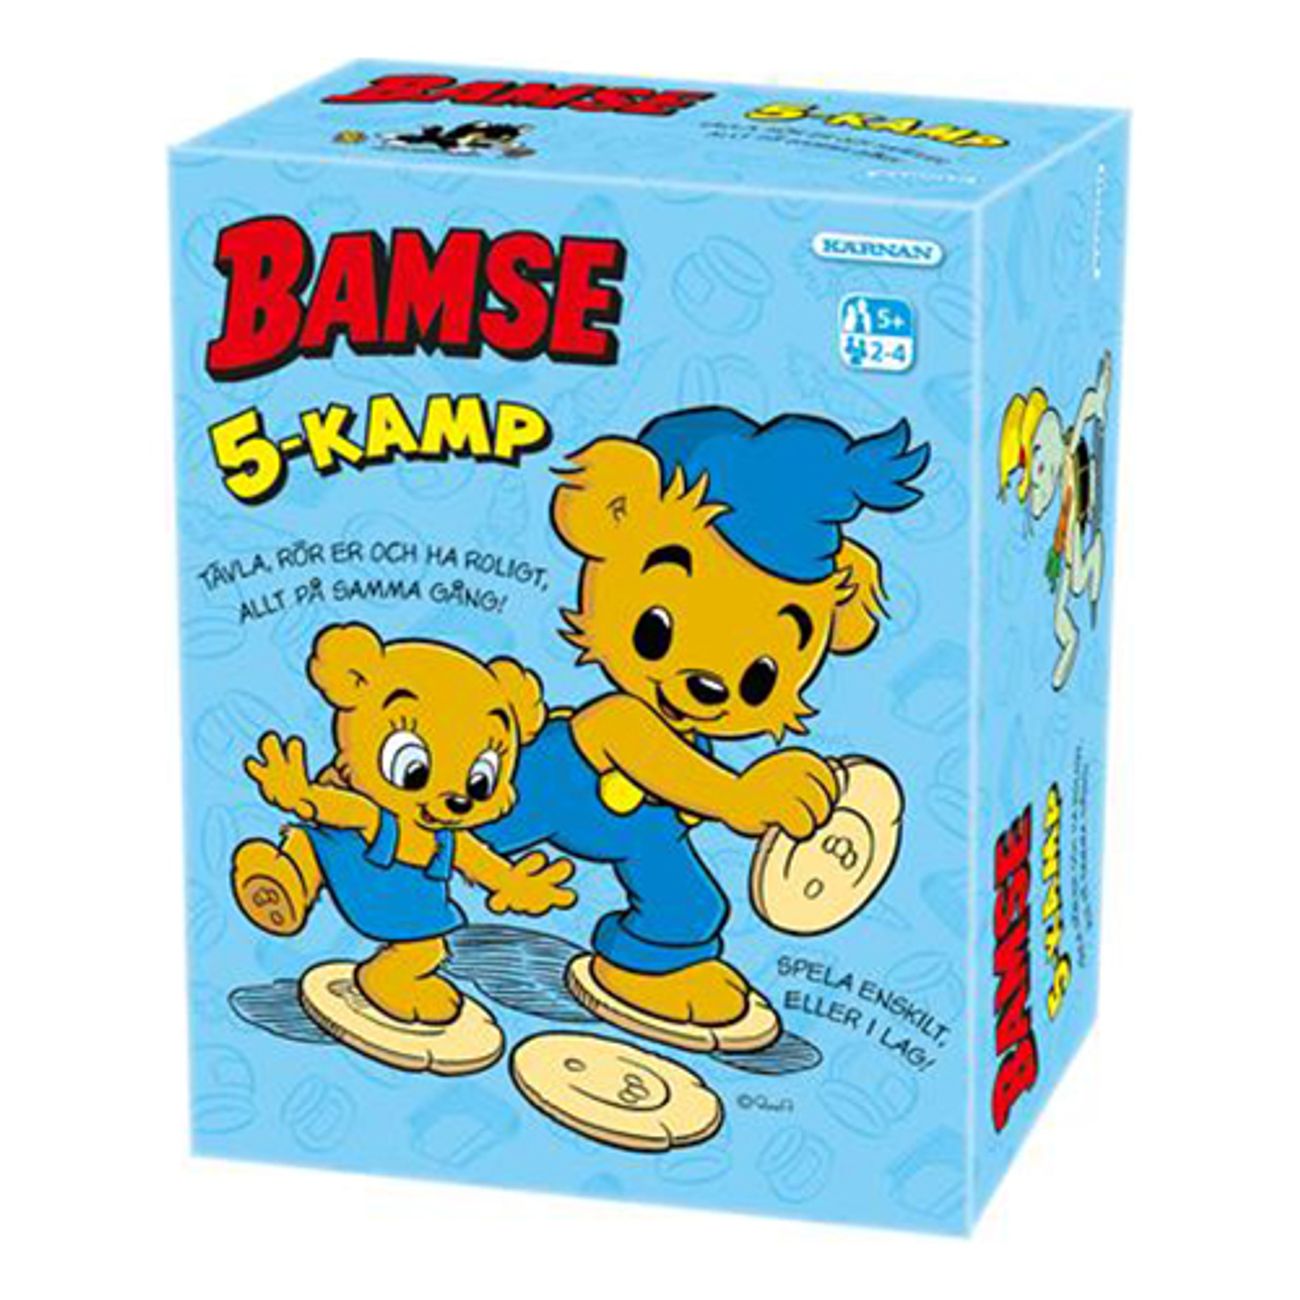 bamse-5-kamp-1